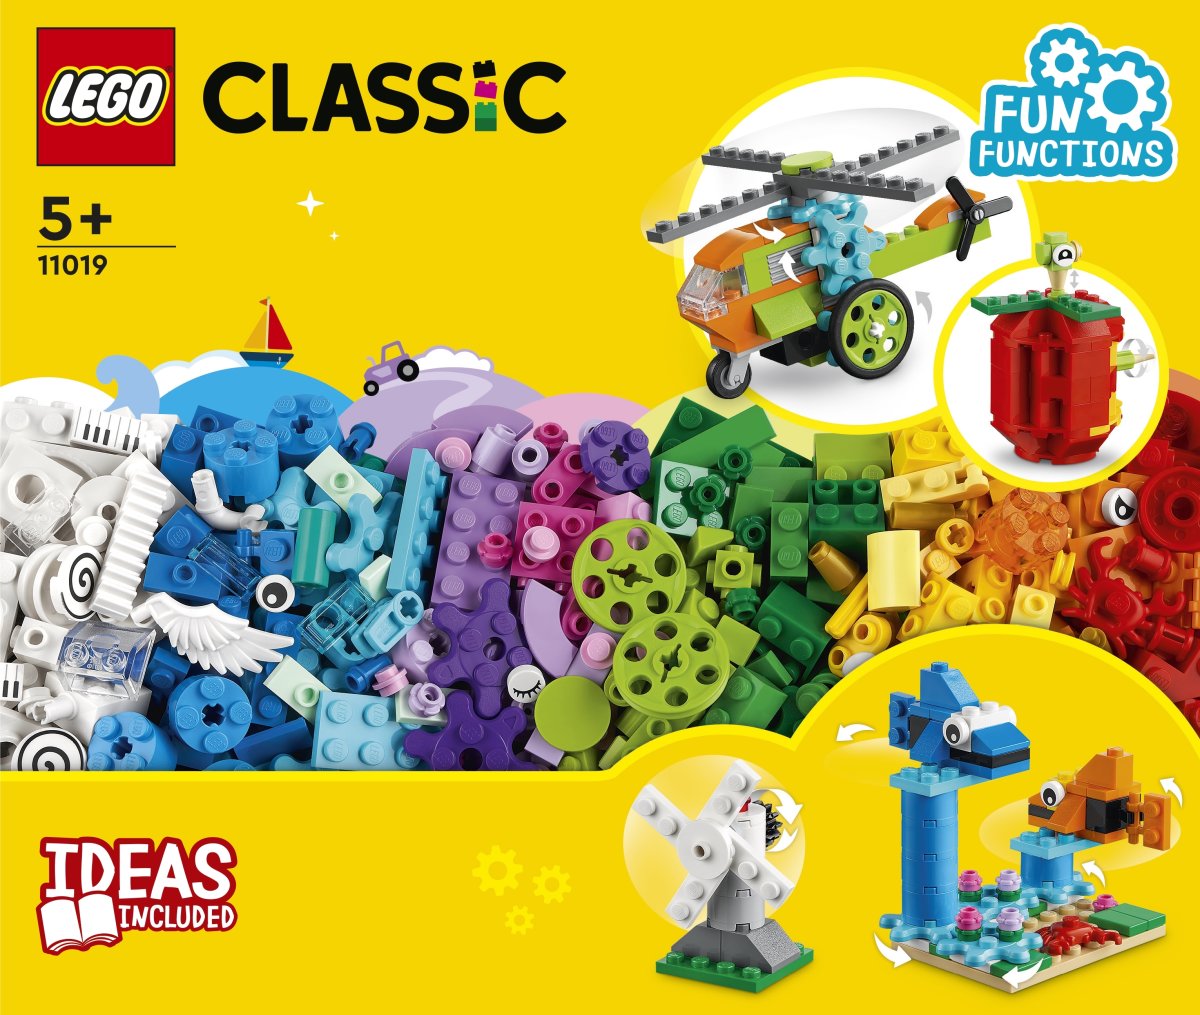 LEGO Classic Klodser og funktioner | Lomax A/S